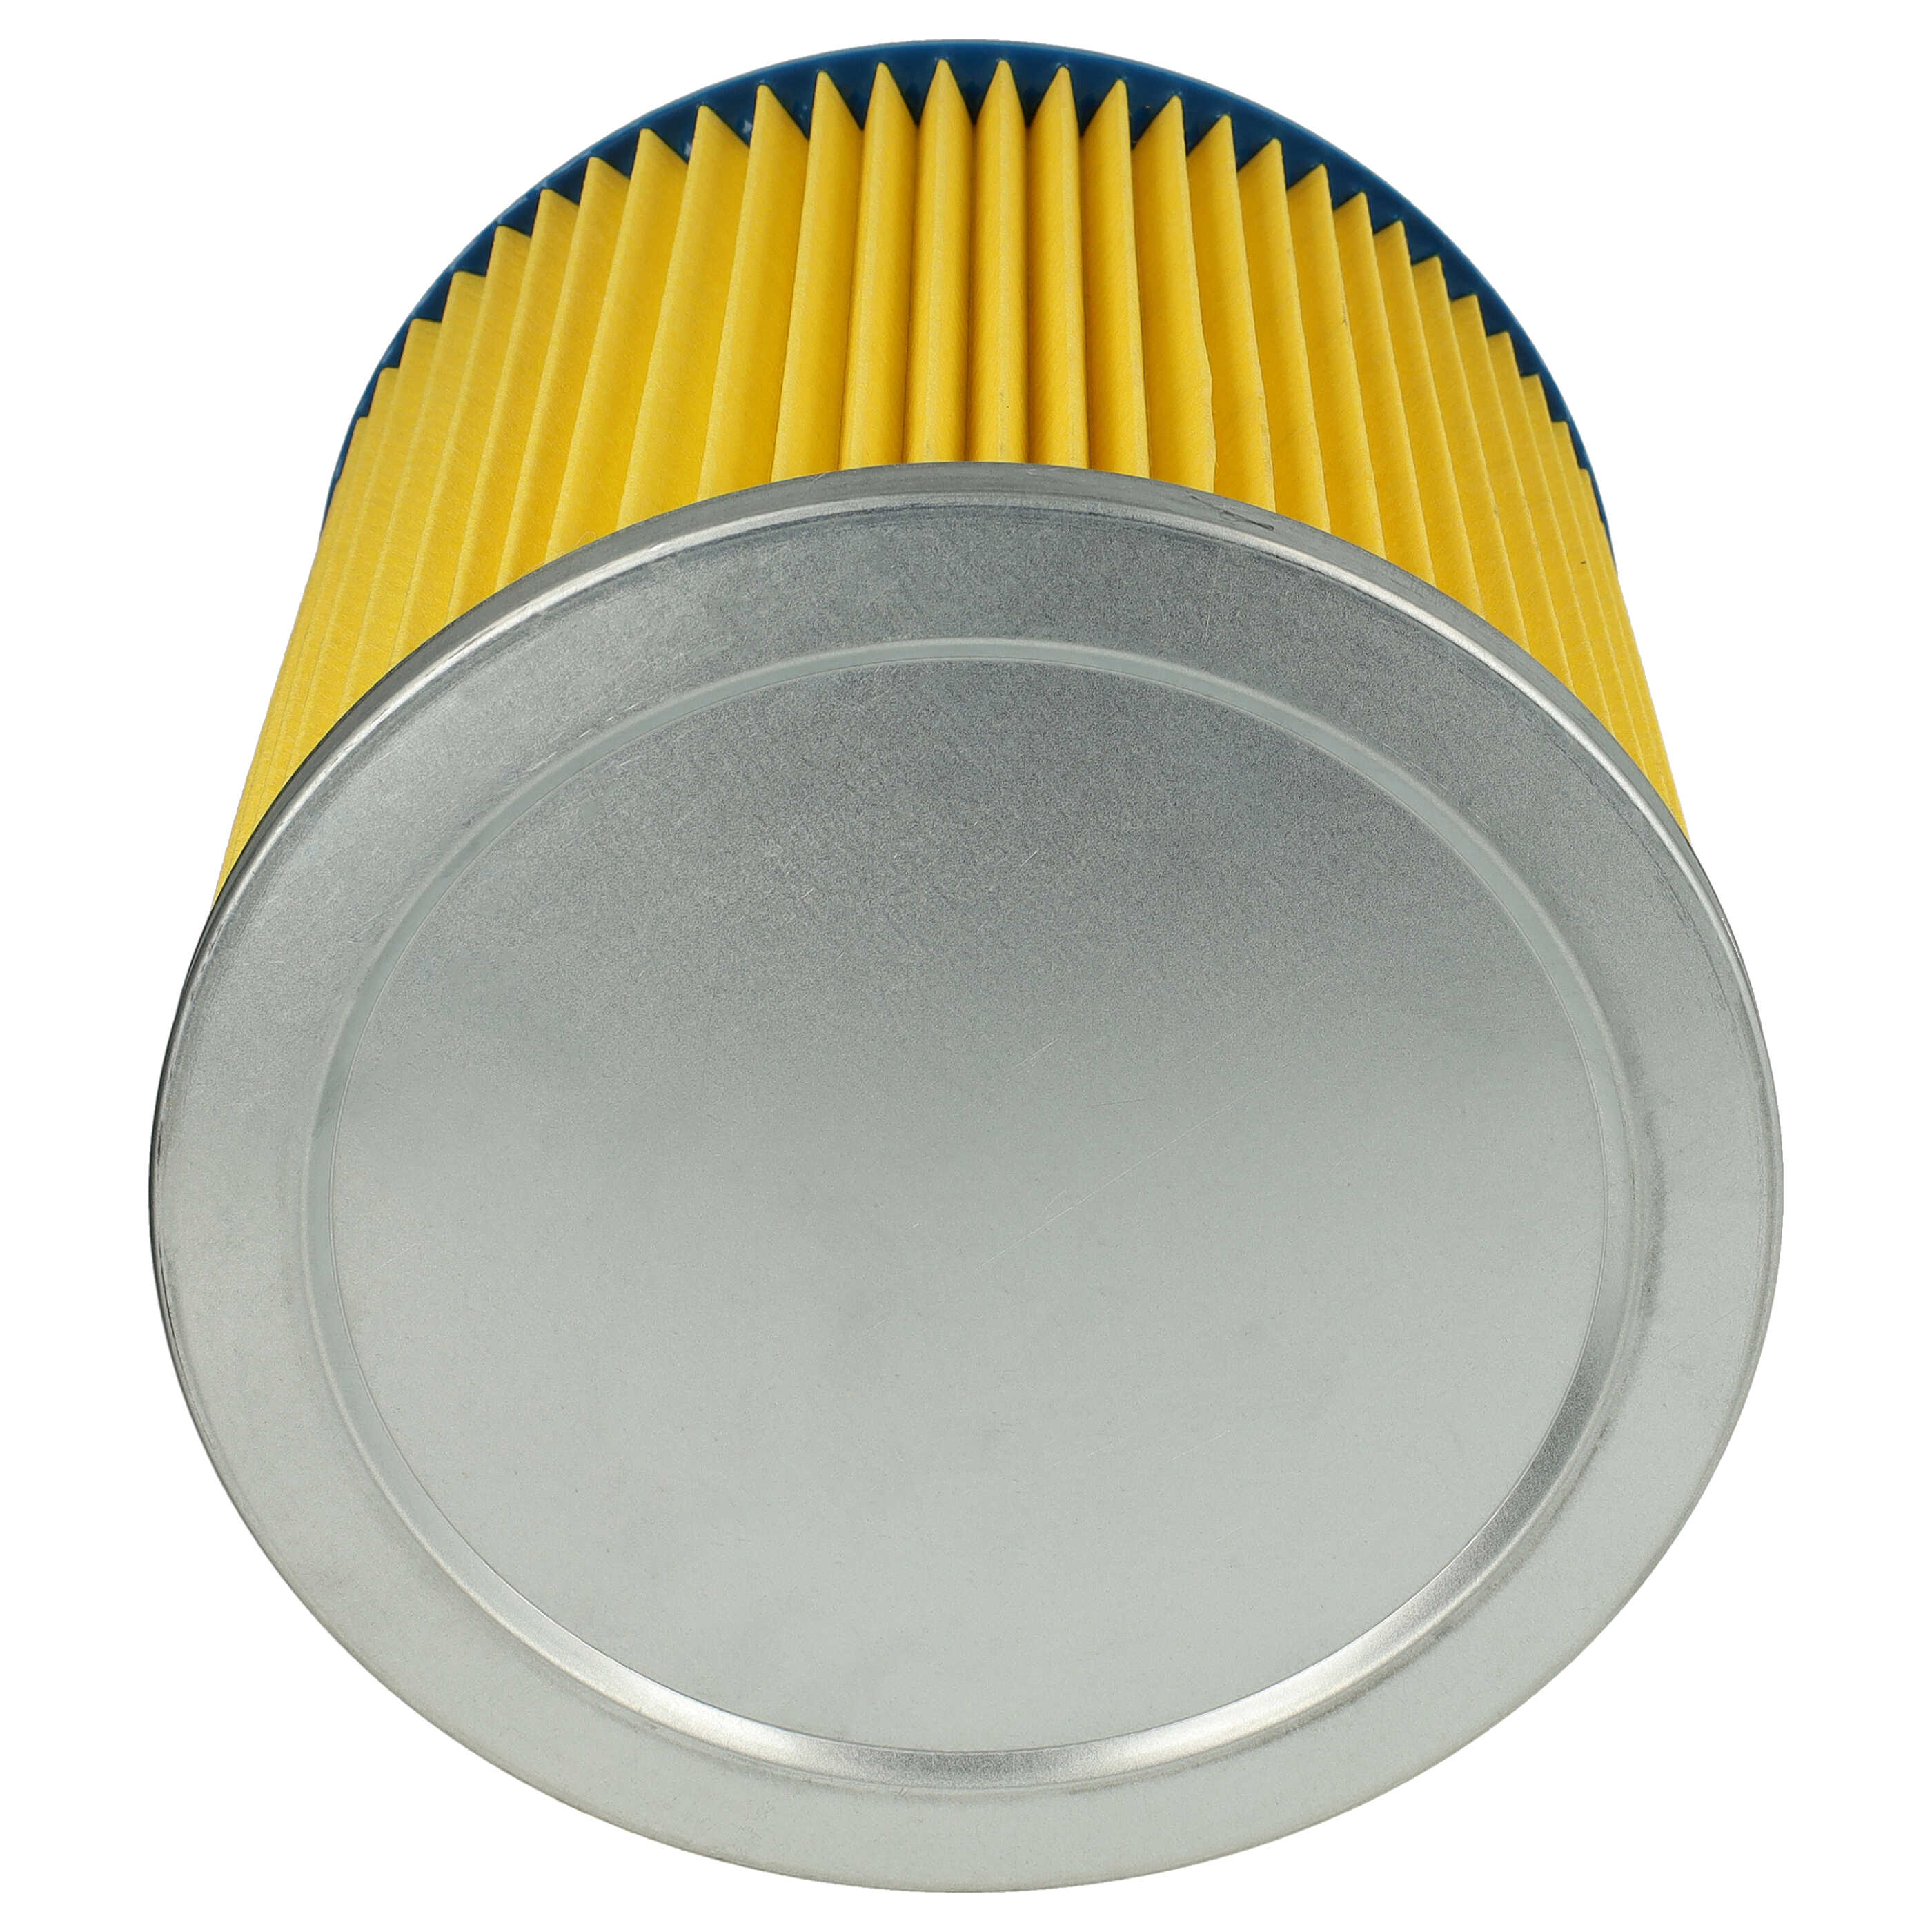 Filtro reemplaza Einhell 2351110 para aspiradora - filtro de cartucho, azul / amarillo